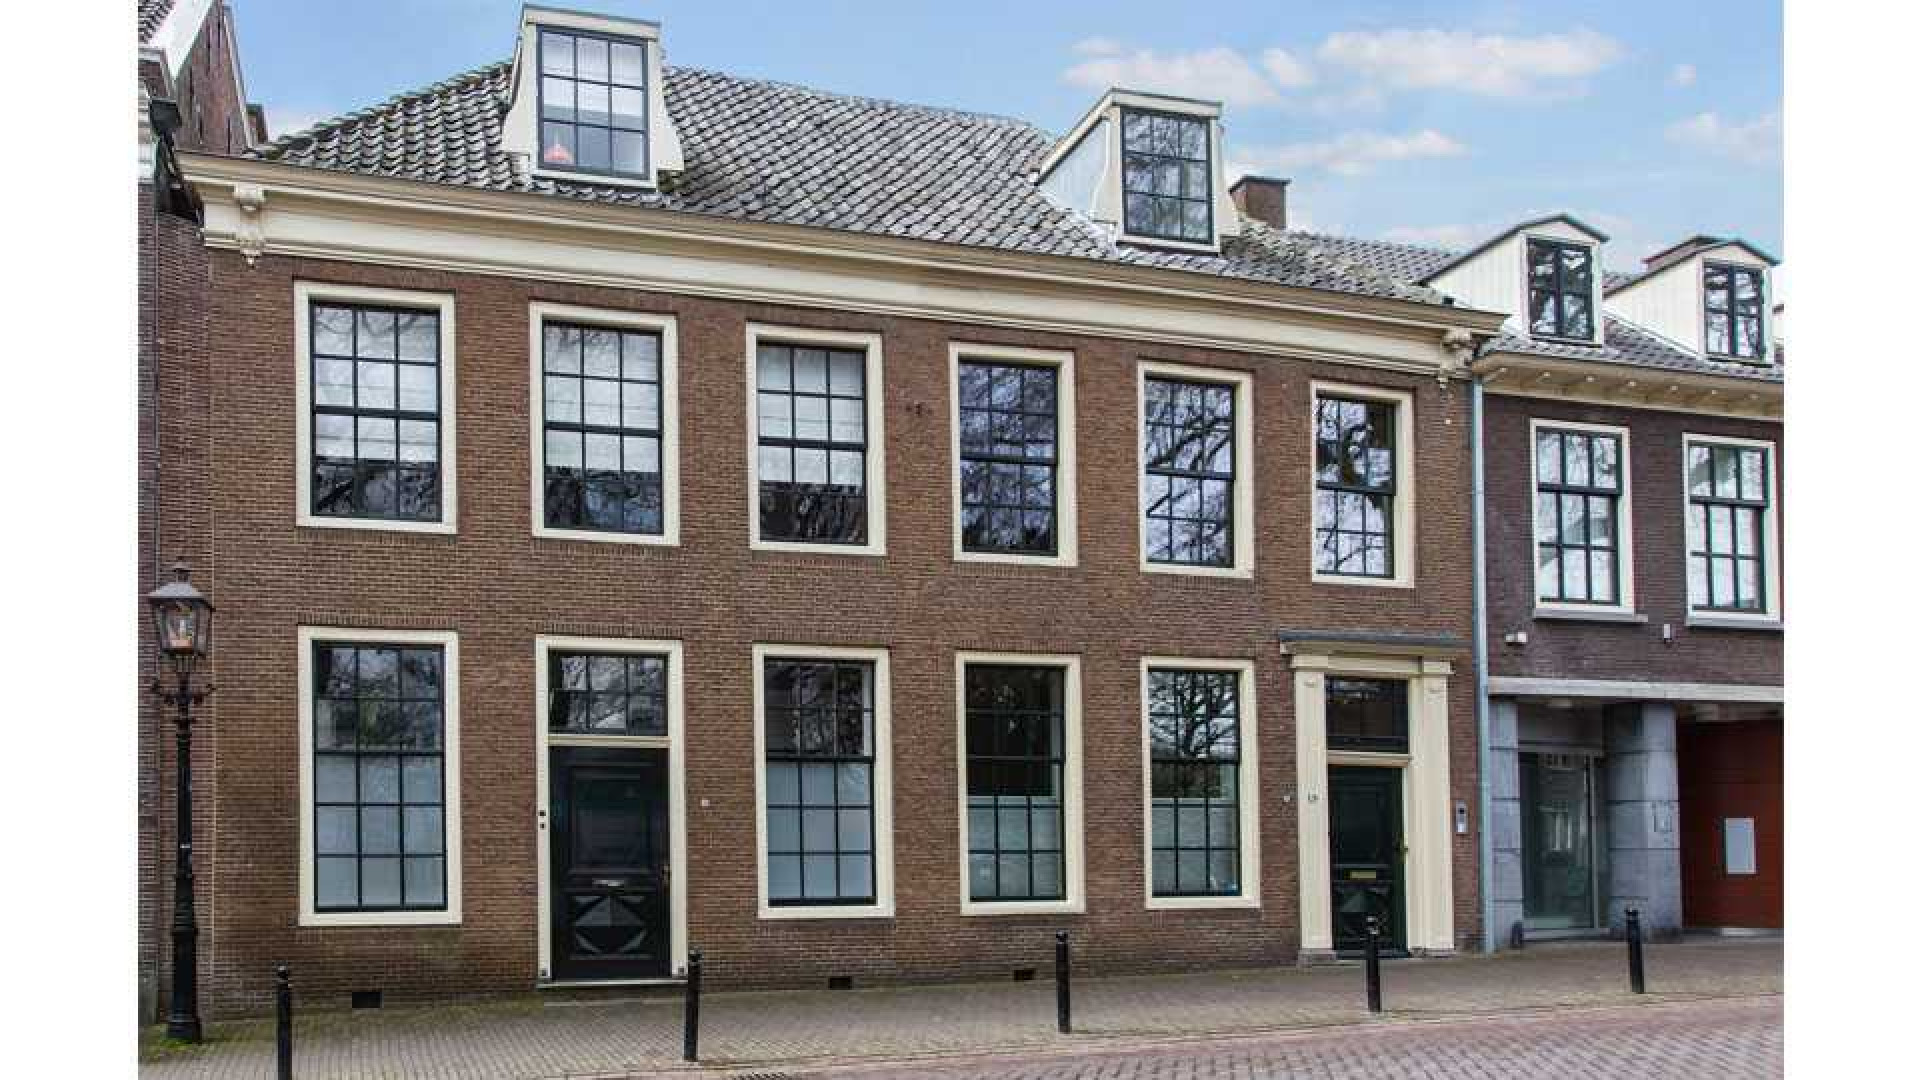 Peter van der Vorst verkoopt zijn monumentale herenhuis met vette winst. Zie foto's 20